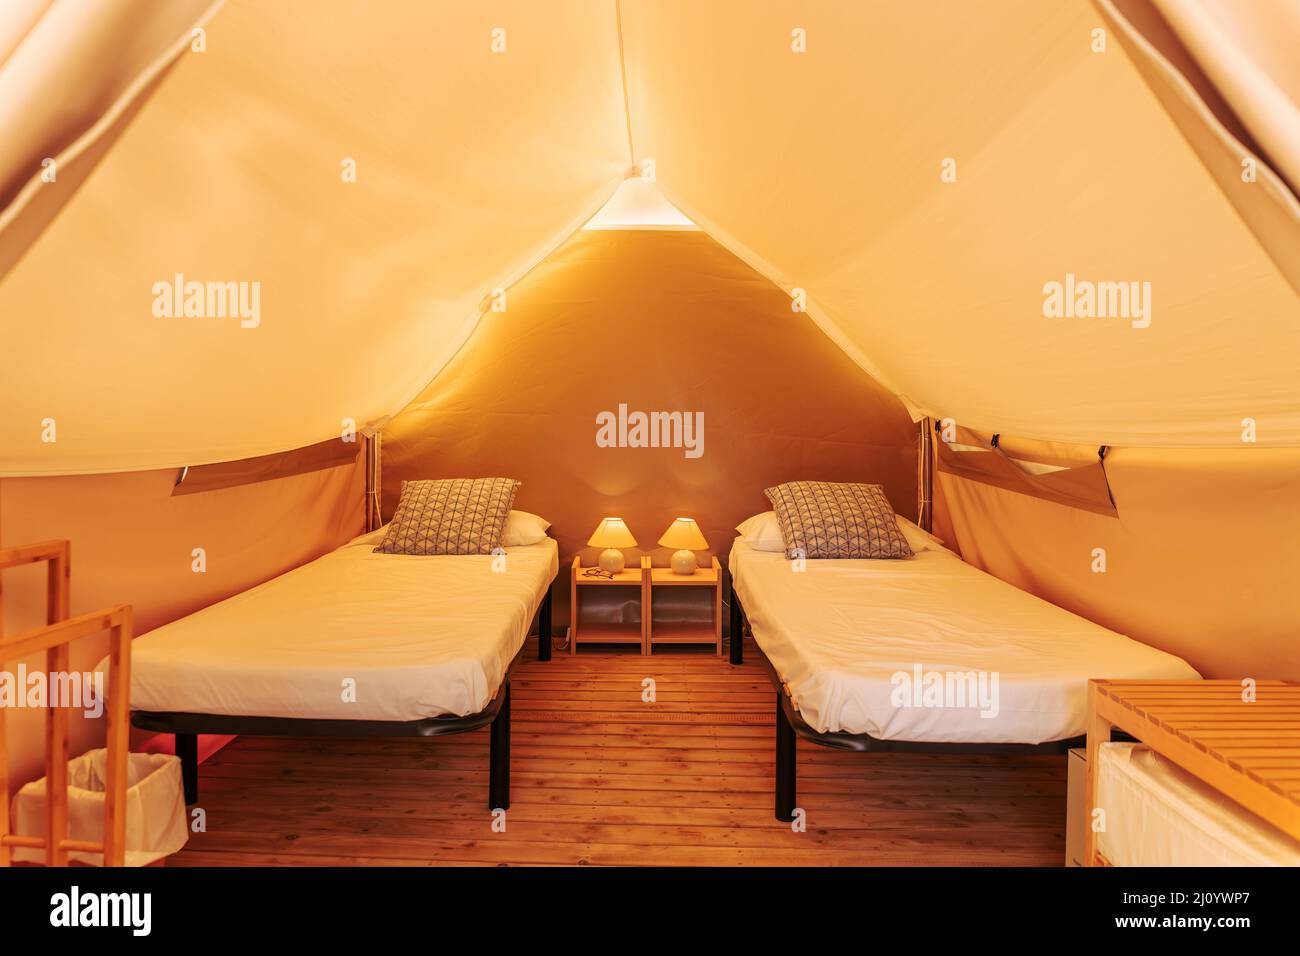 Tente glamping intérieur confortable avec lits par temps ensoleillé. Tente de camping glamour pour les vacances d'été en plein air et concept de mode de vie de vacances Banque D'Images